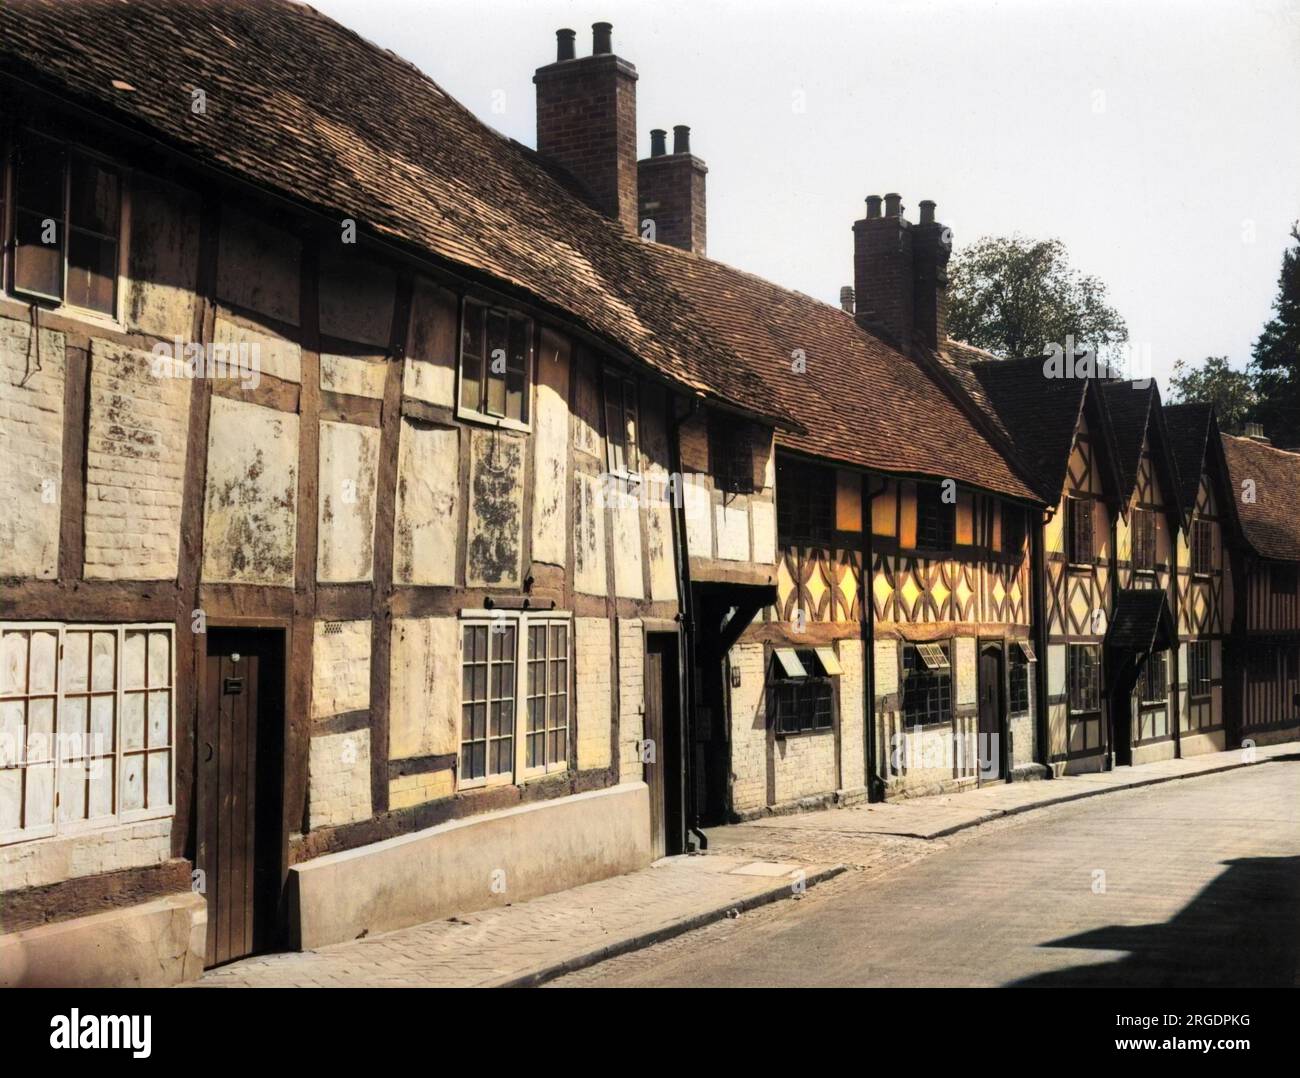 Mill Street, Warwick, avec une rangée de maisons à colombages Tudor, un aperçu de l'Angleterre de Shakespeare. Banque D'Images